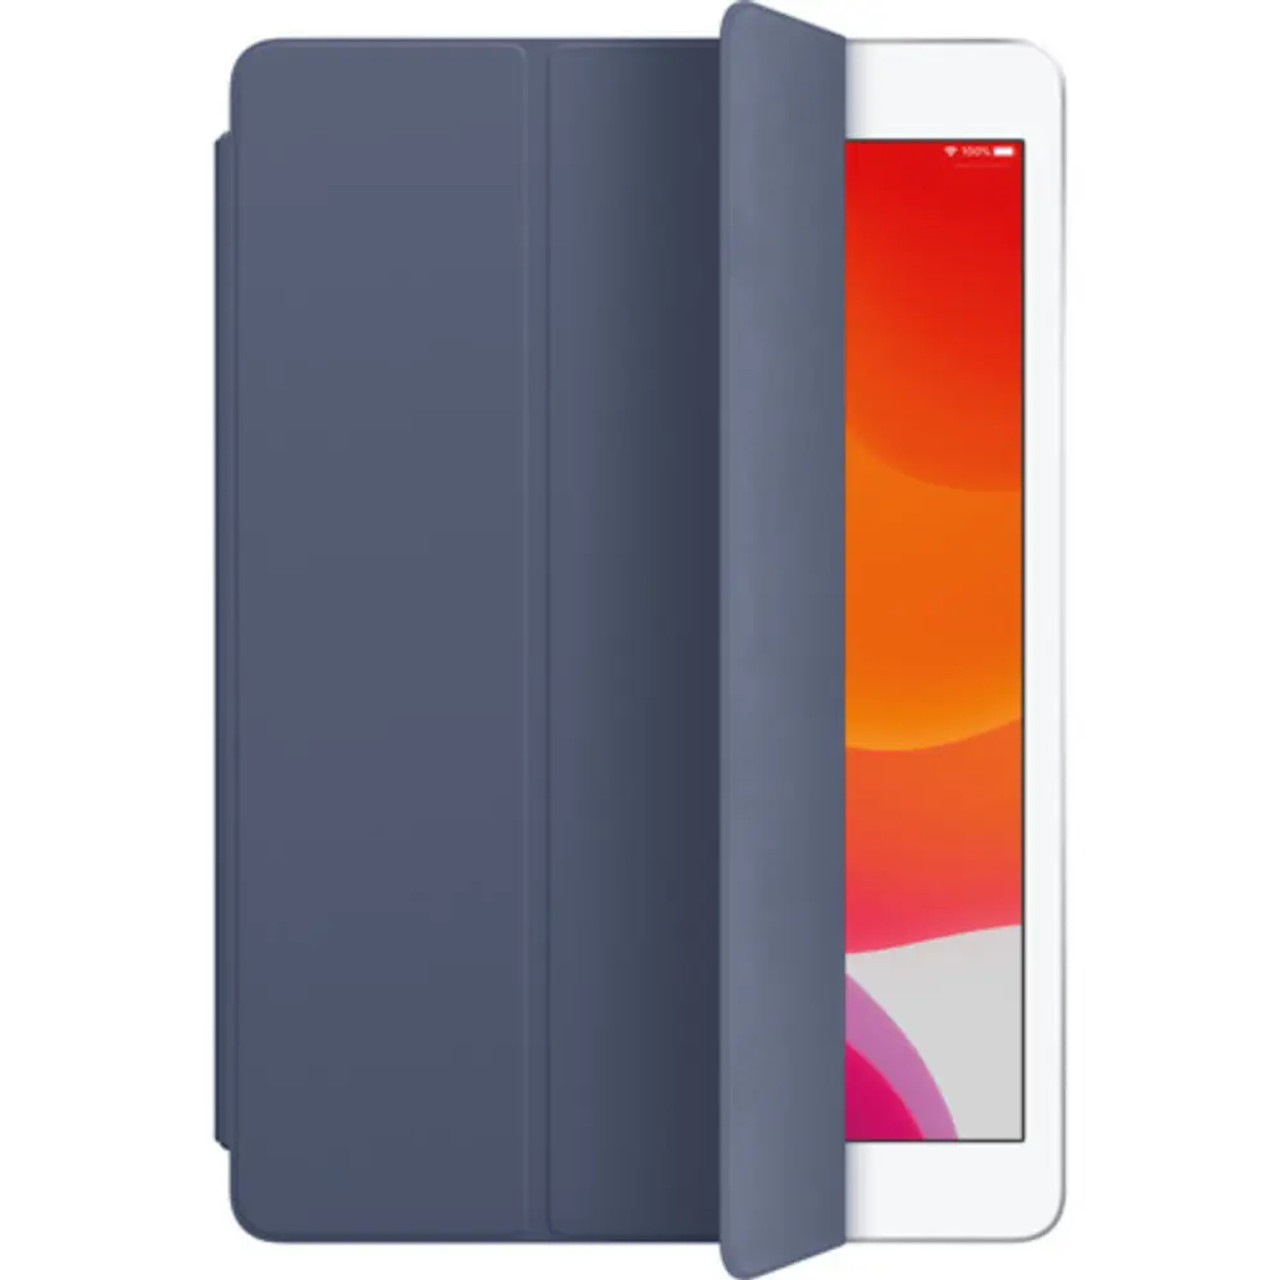 APPLE Smart Cover pour iPad (6ème génération) - Sable rose - LE MAC URBAIN